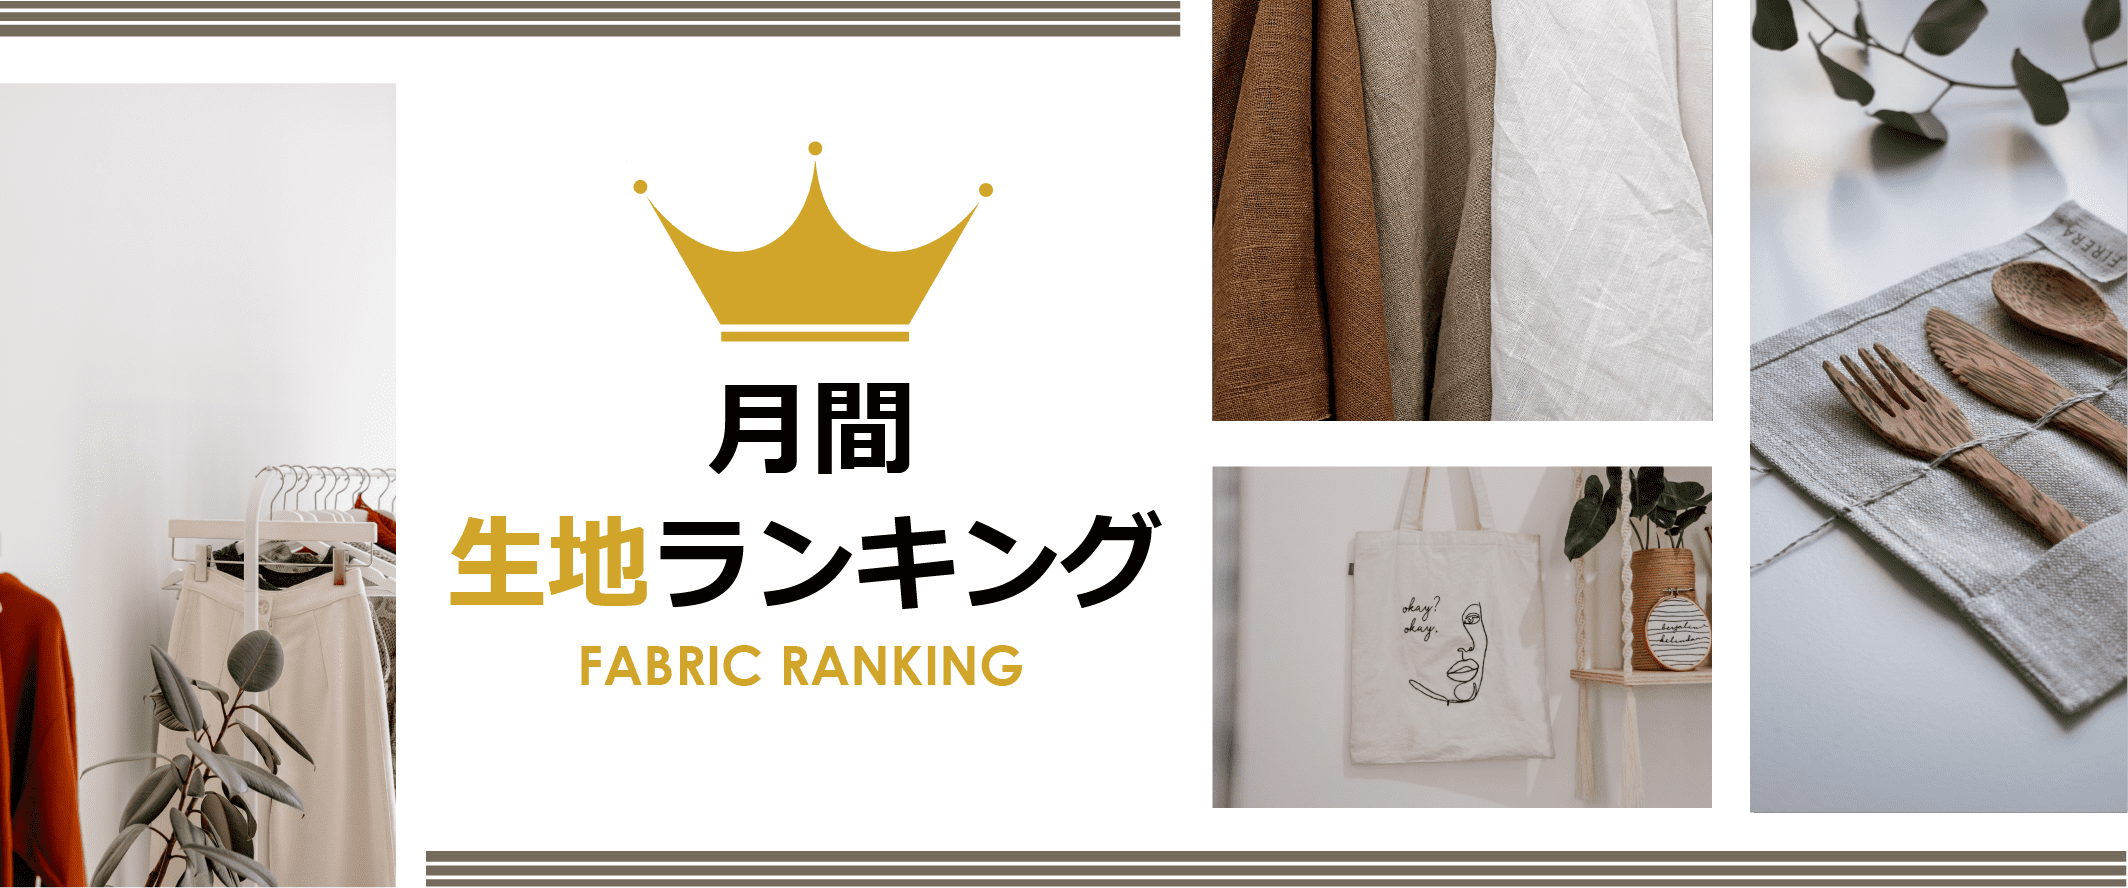 textile-net-ranking